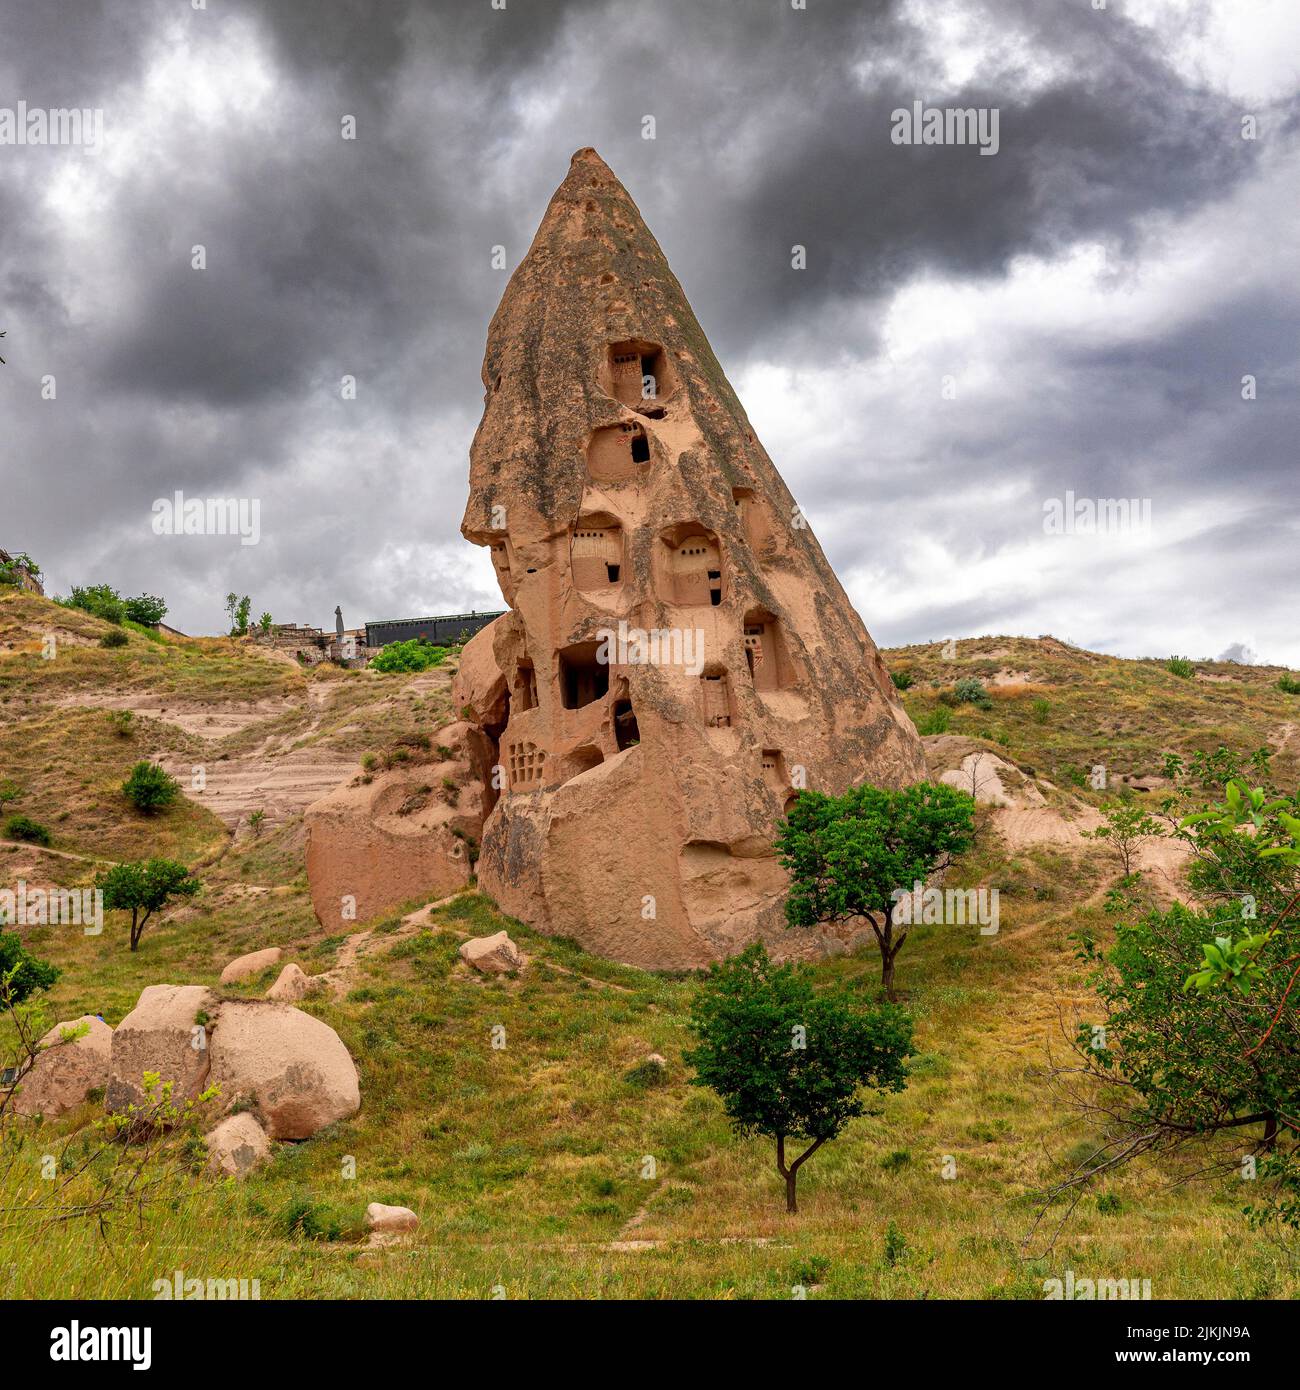 Estructura tallada en la roca cerca de Uchisar. Turquía. Foto de stock